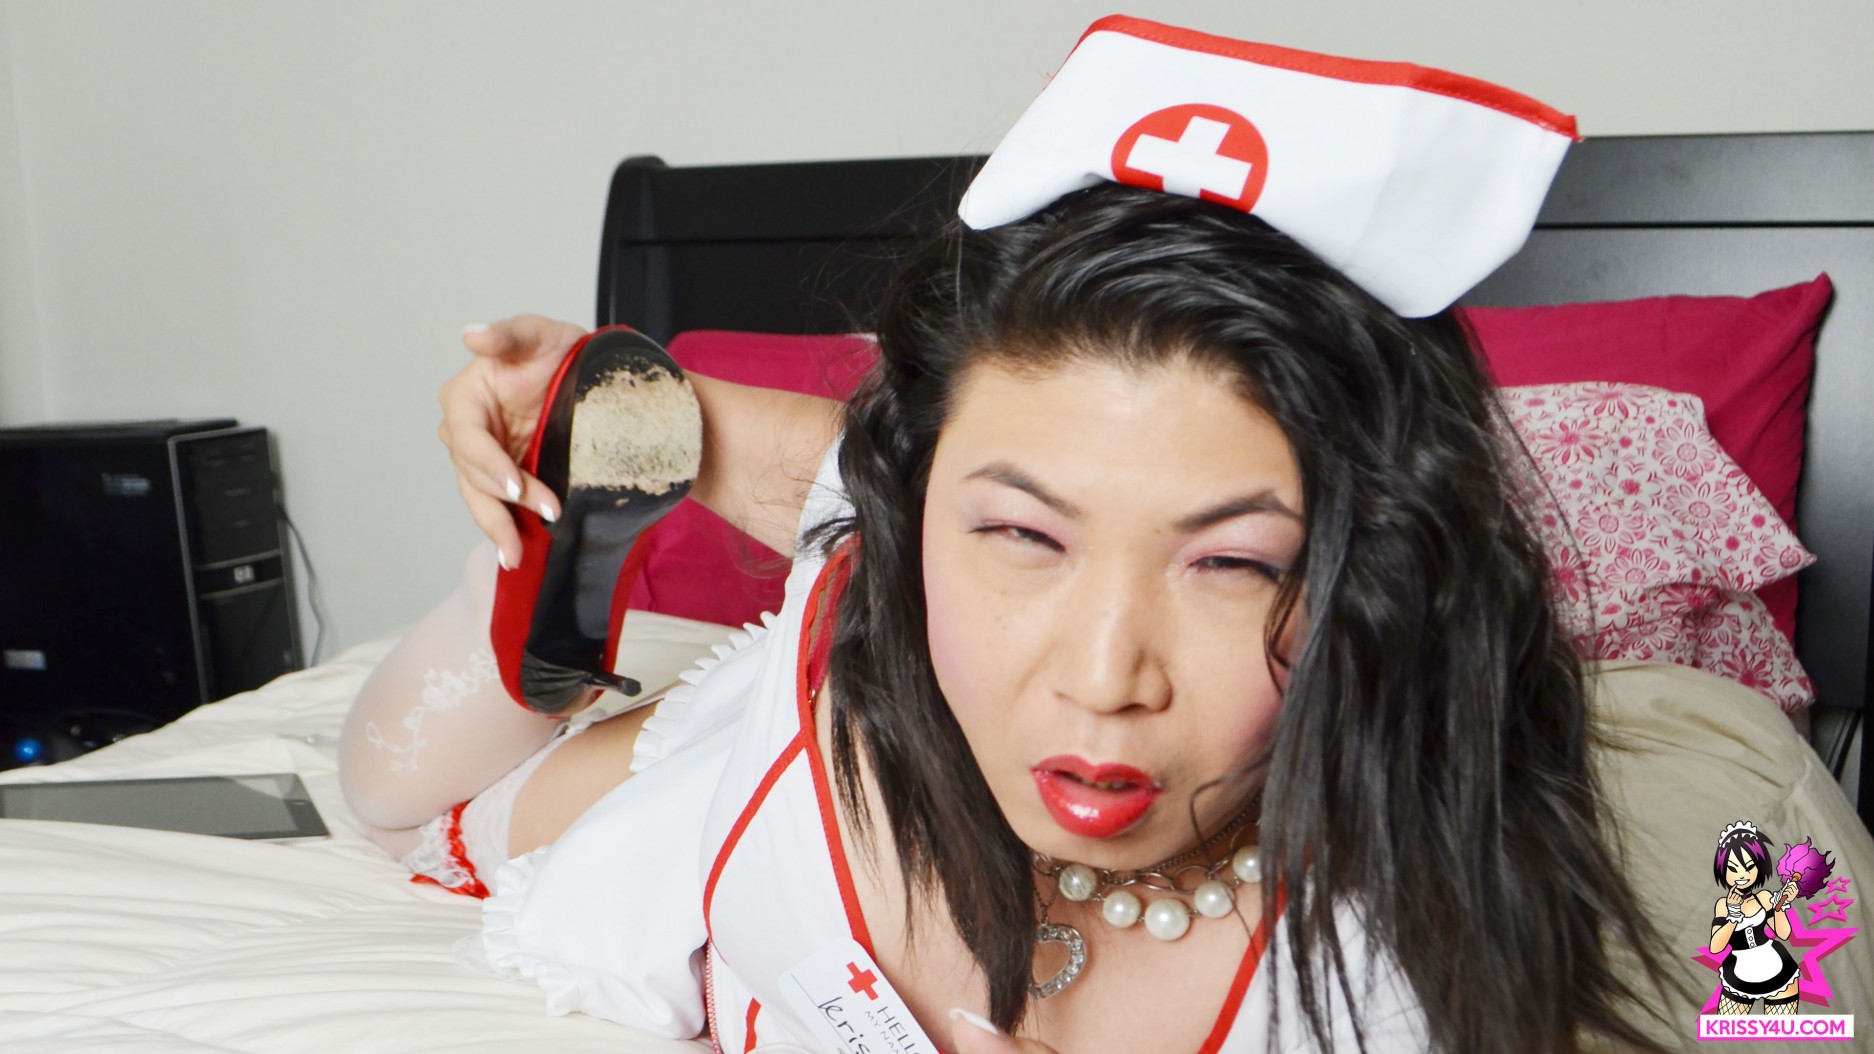 Krissy4u - Naughty Tgirl Nurse